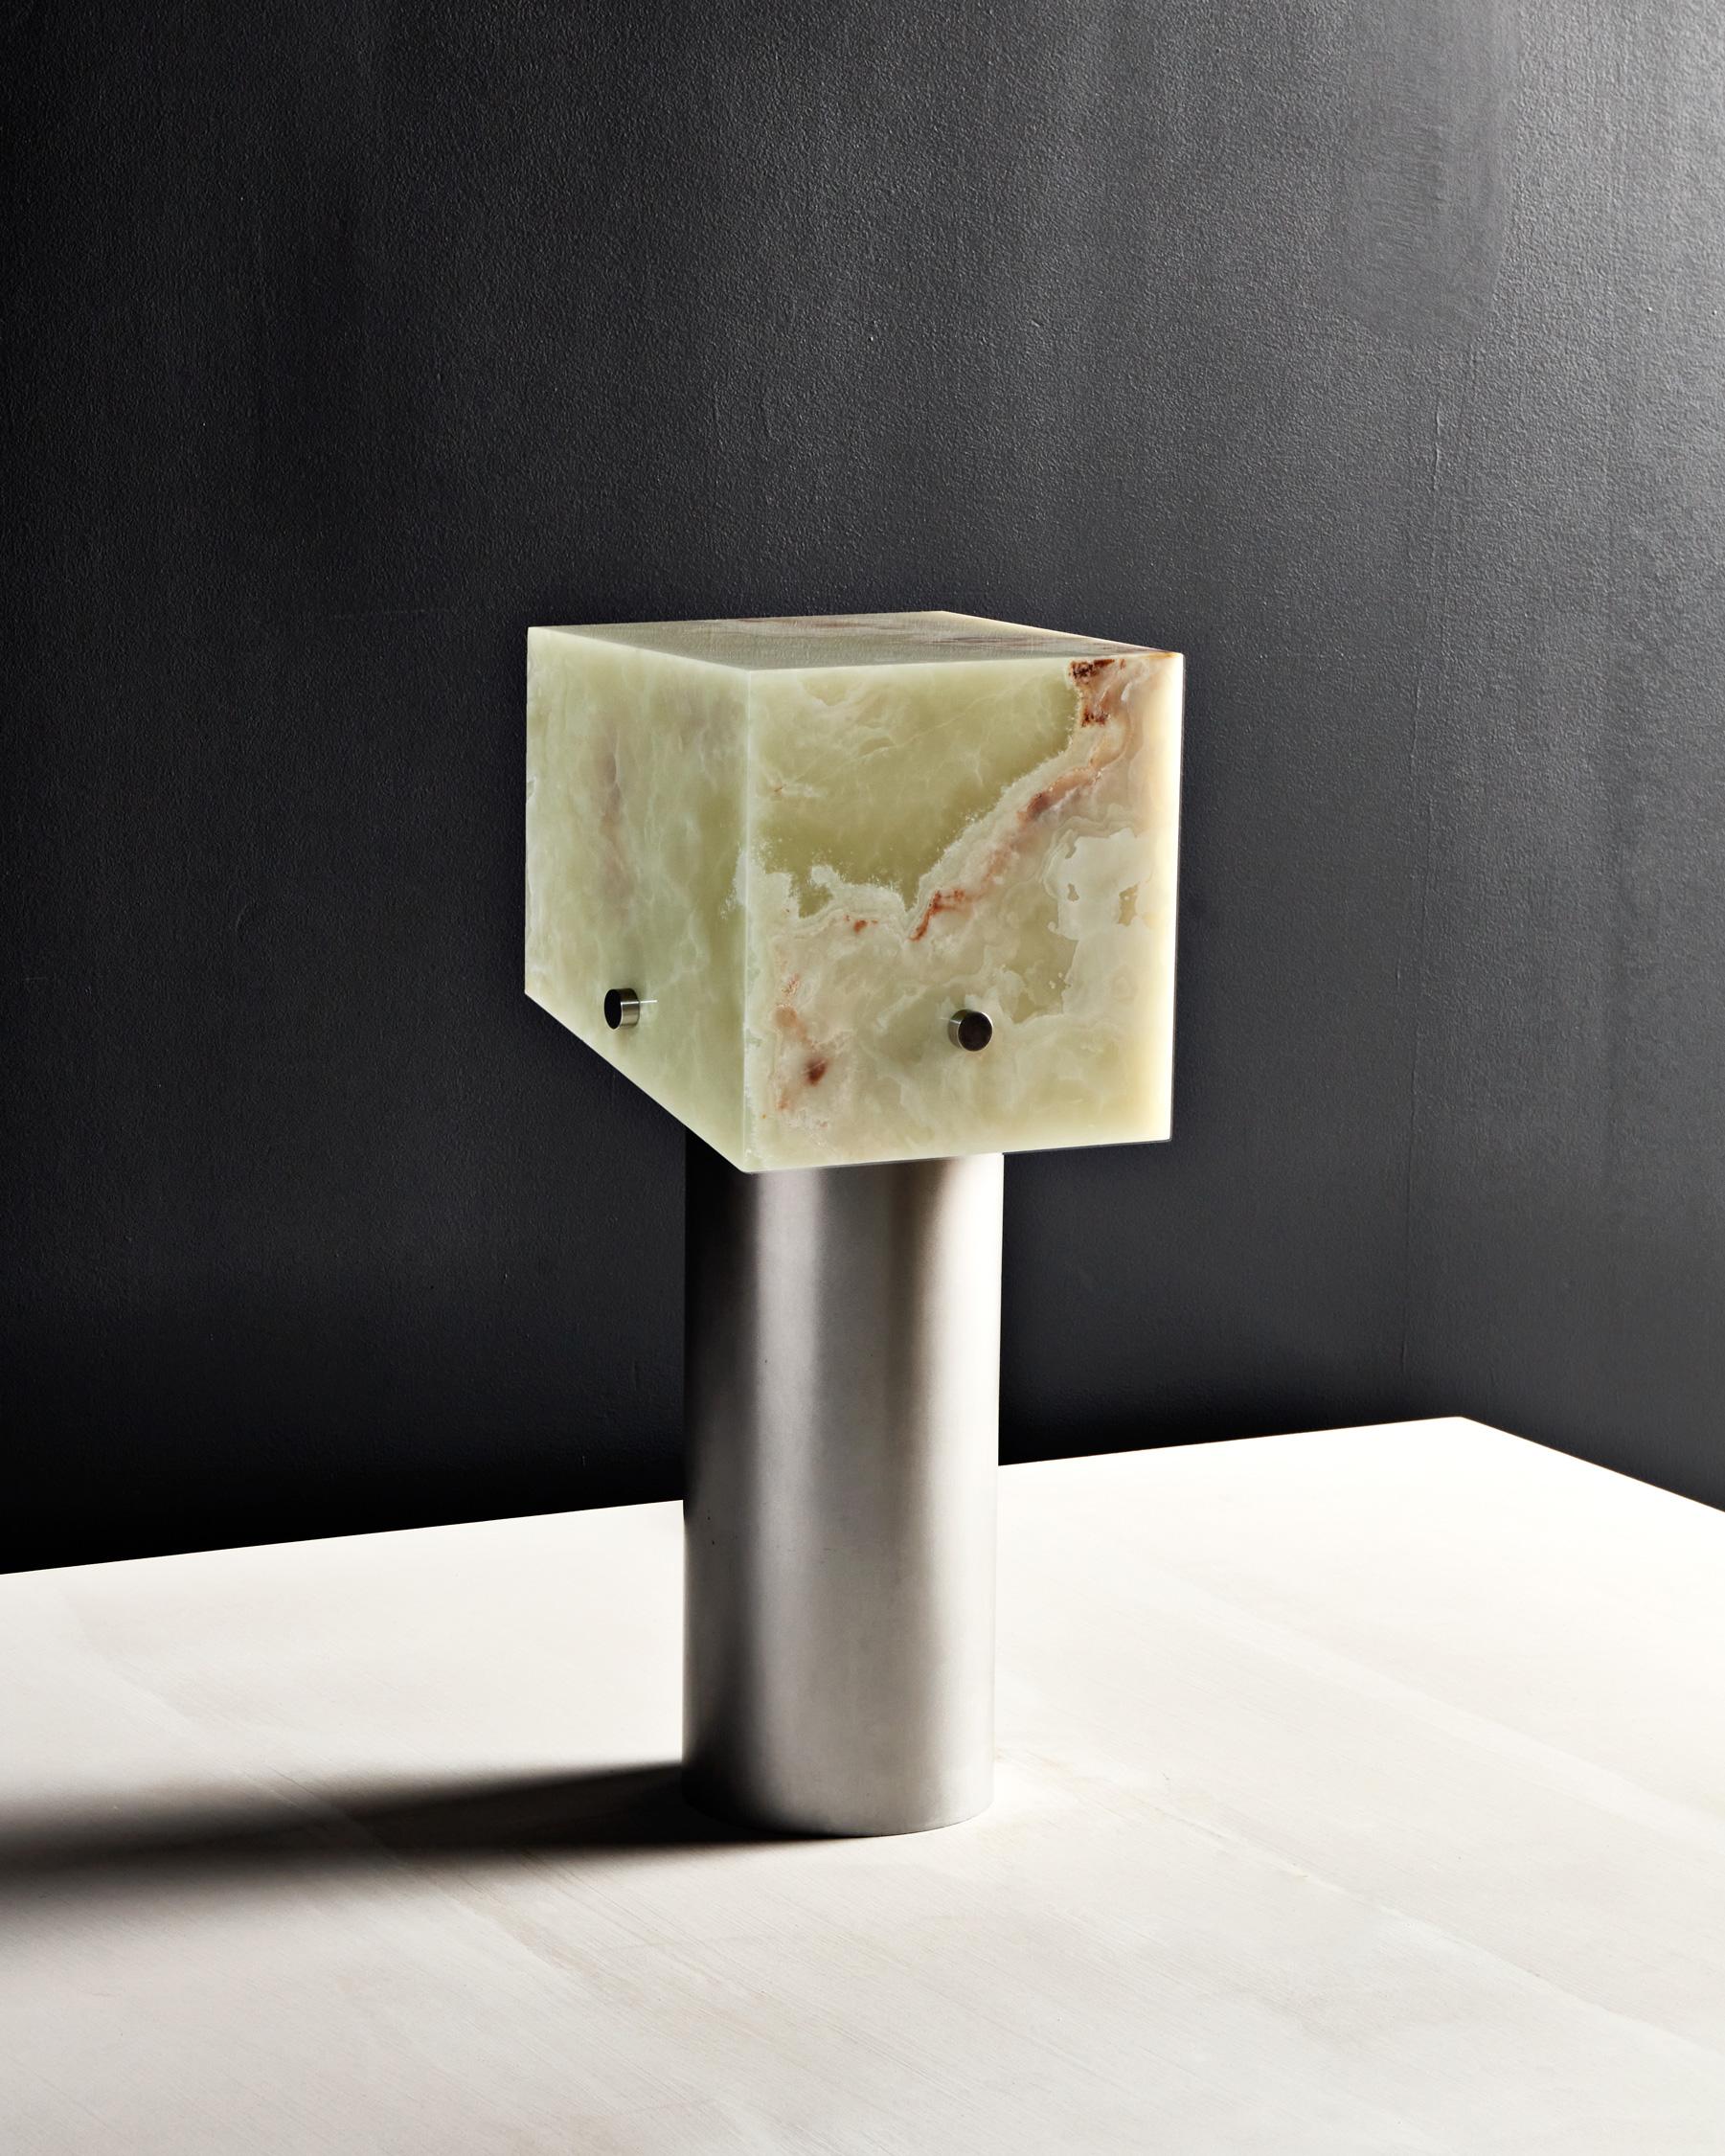 Le design sculptural de la lampe Mada joue avec l'équilibre, la translucidité et la forme géométrique pour créer une pièce harmonieuse et contemporaine. La lampe est composée d'un abat-jour en marbre ou en onyx qui plane au-dessus d'une base